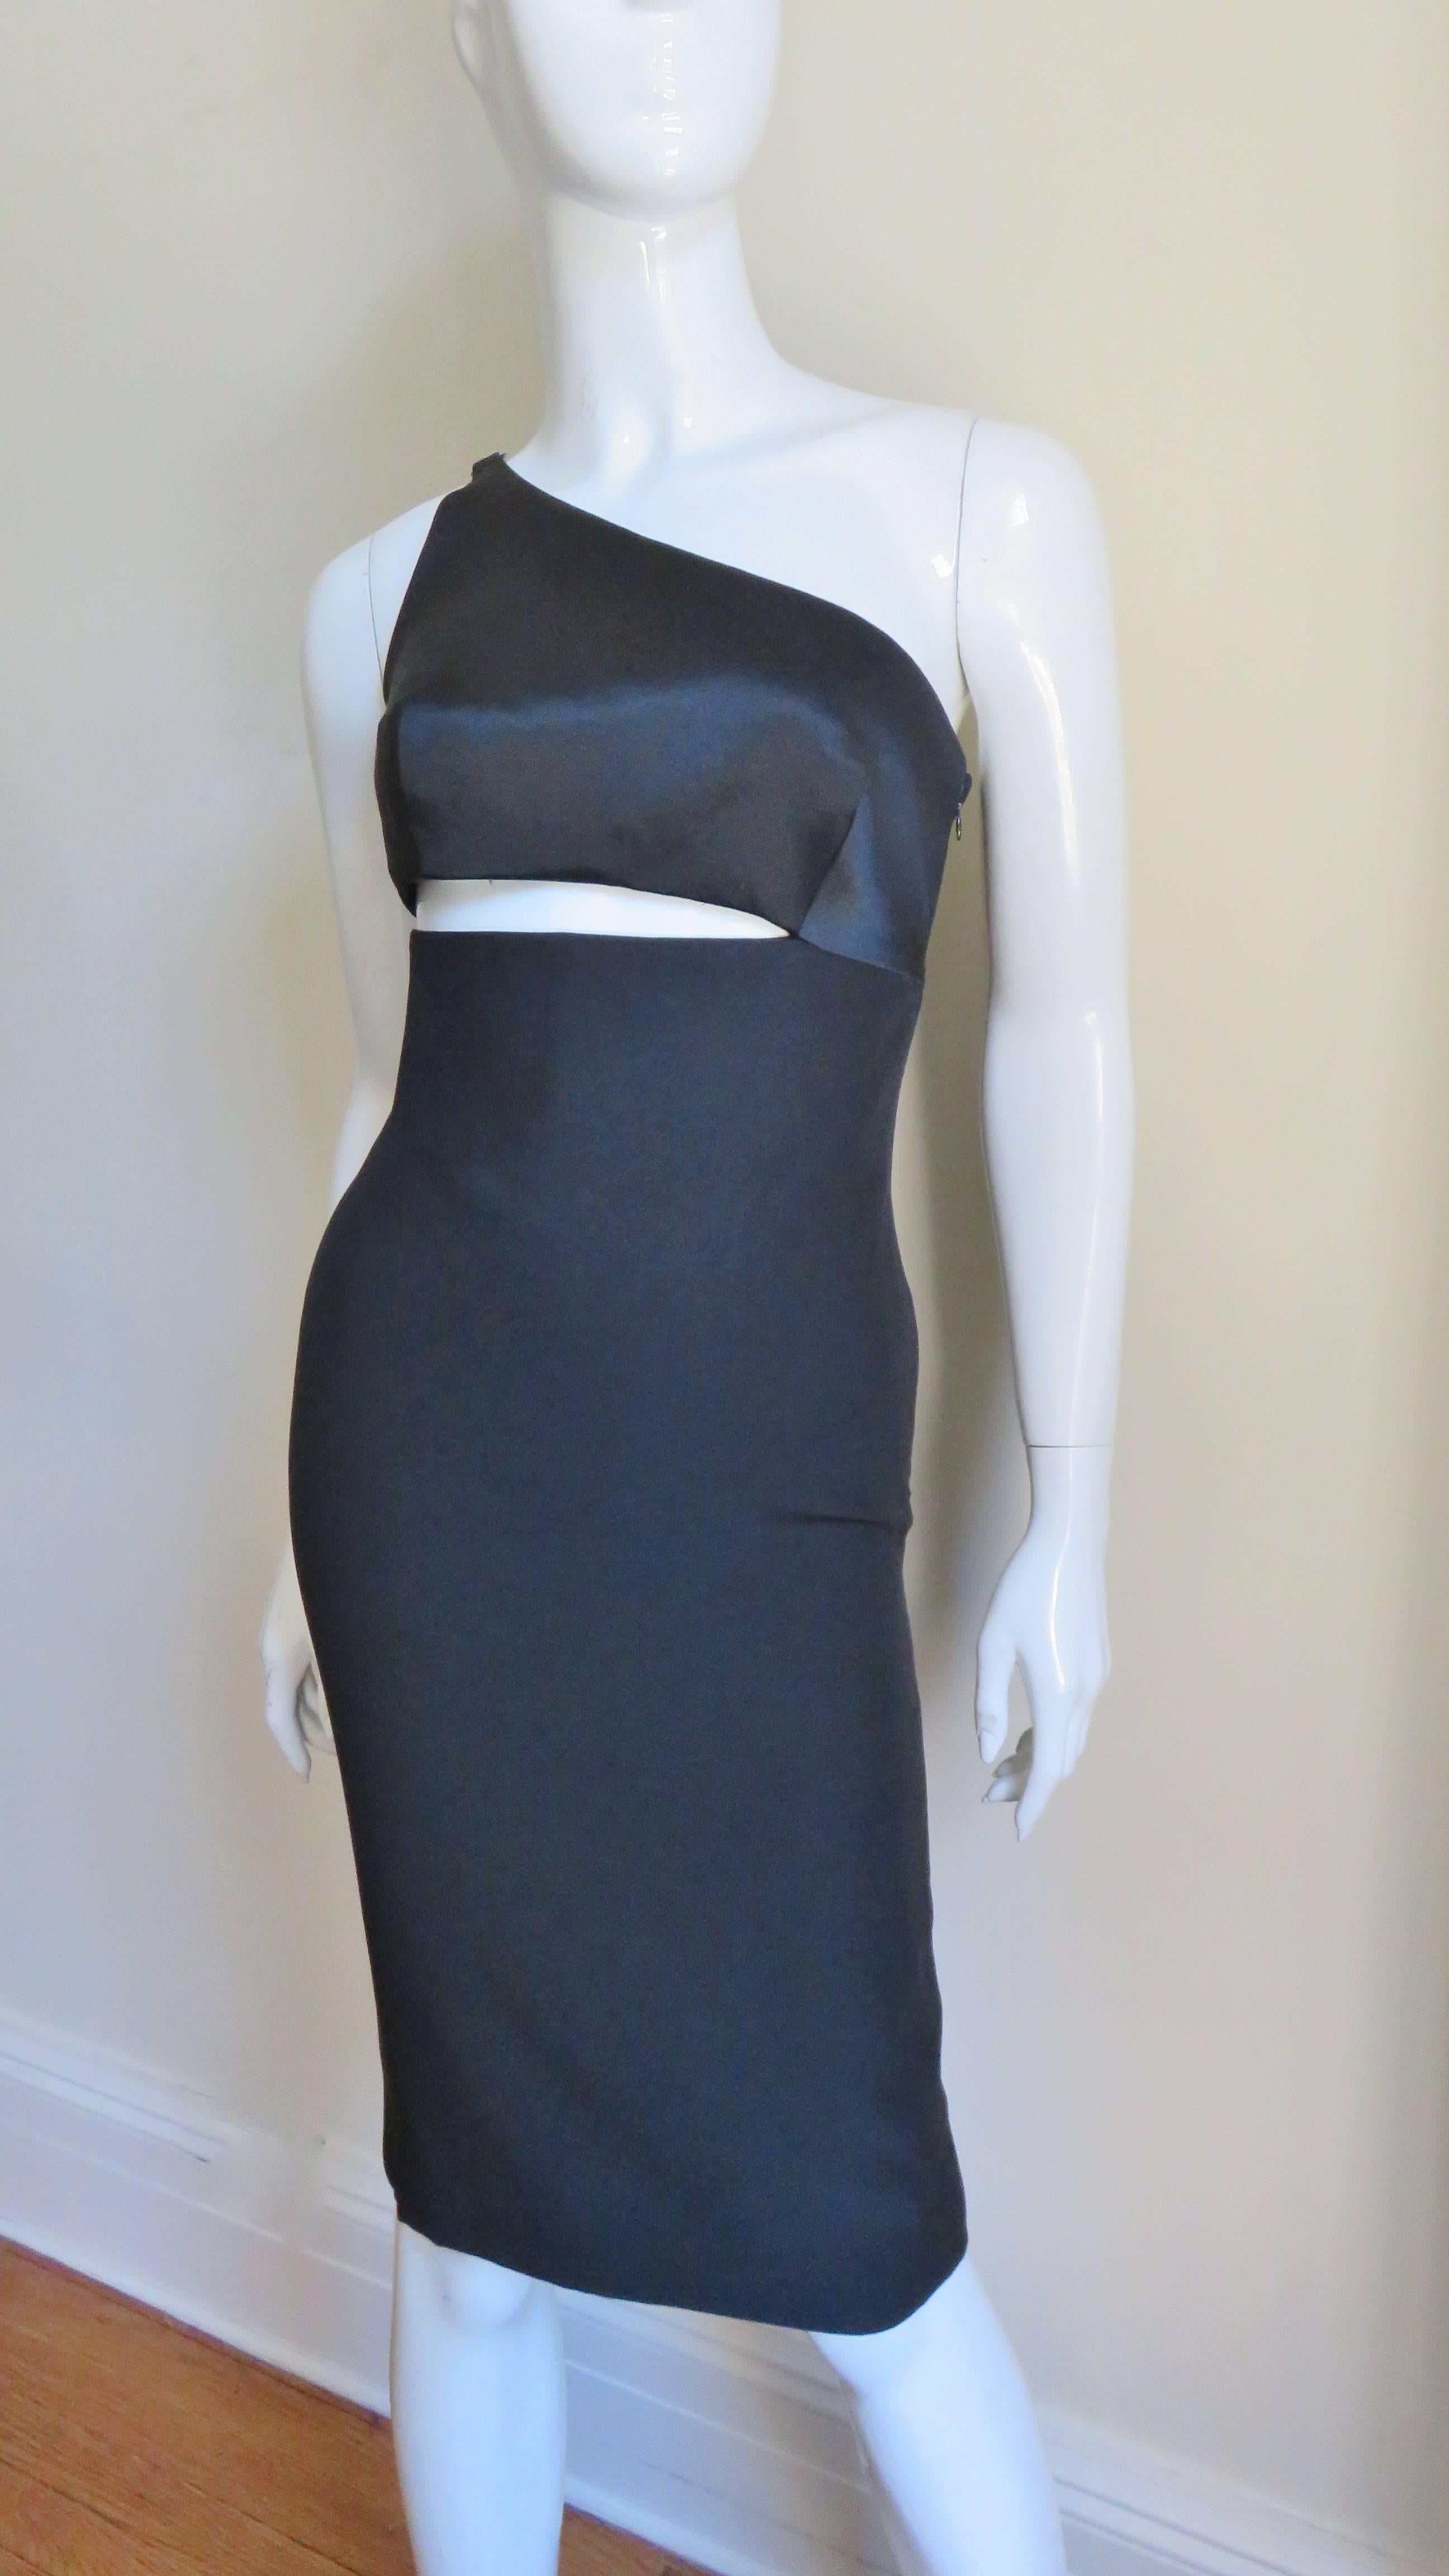 Une fabuleuse robe en soie noire de Gianni Versace.  Il se compose d'un corsage à une épaule attaché par un côté à la partie jupe, laissant un coin de peau exposée entre les deux.  Il est entièrement doublé en soie, se ferme à l'aide d'une fermeture